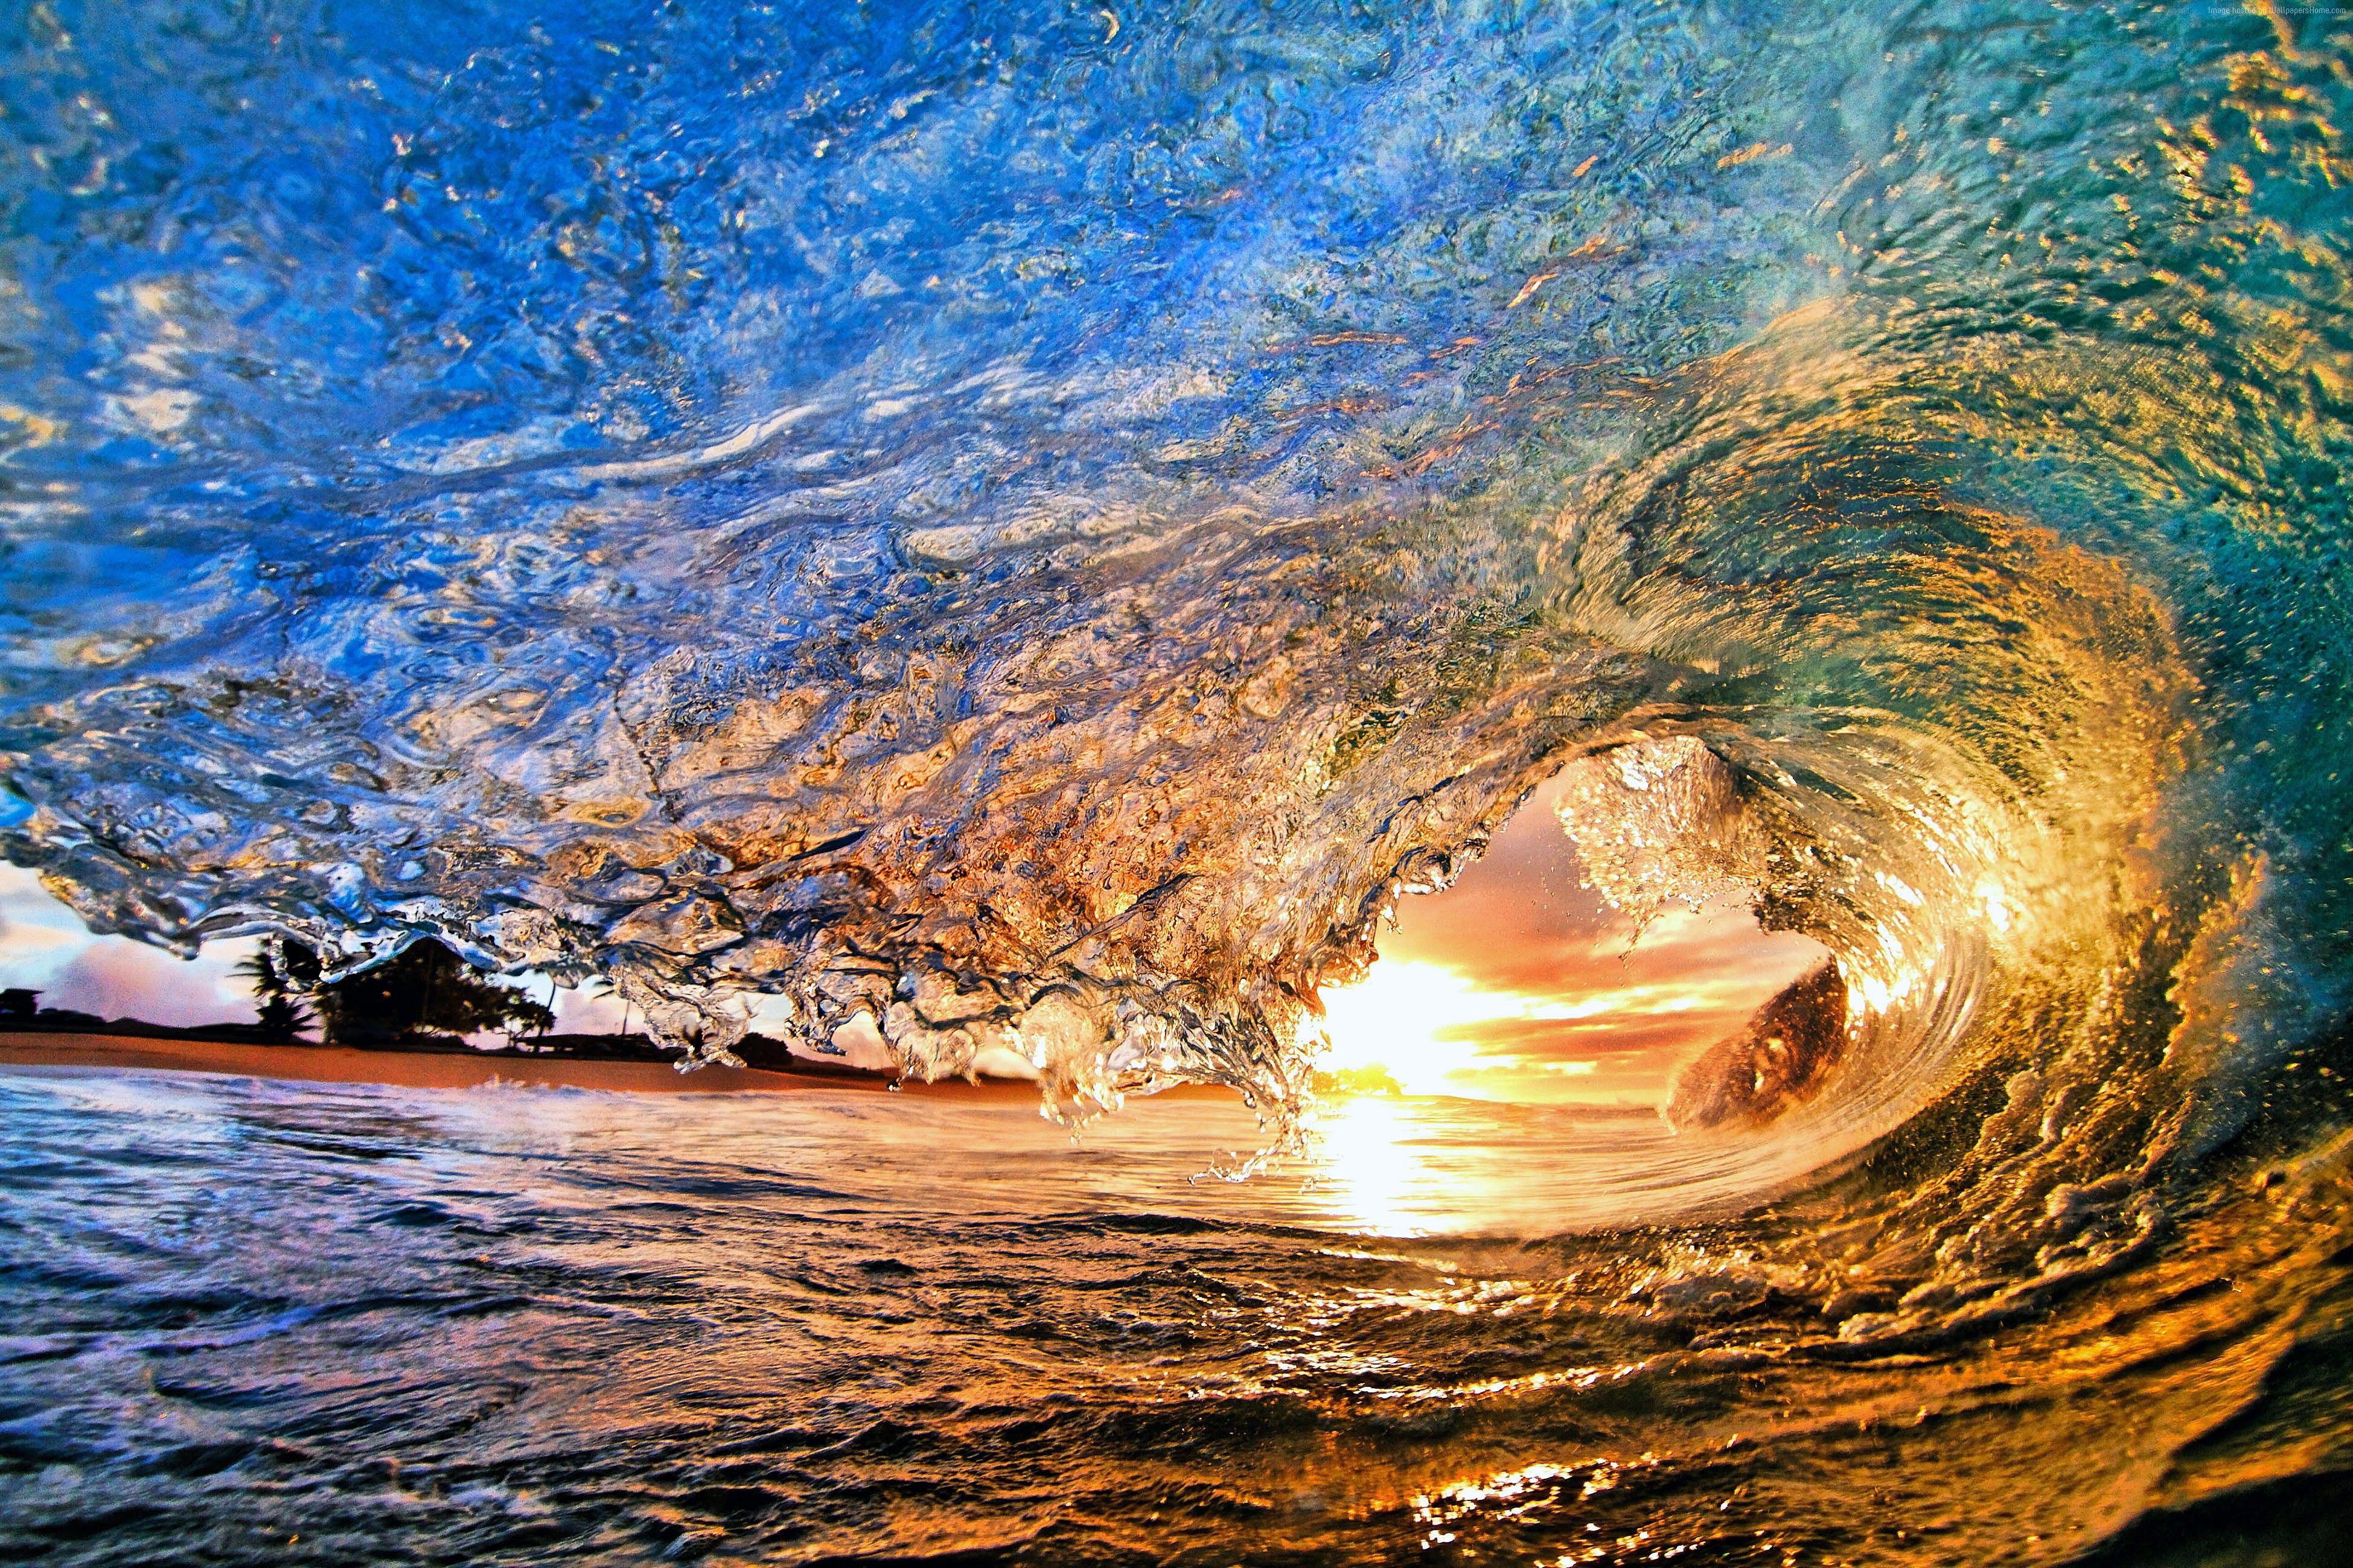 Sunset Wave Wallpapers: Bạn muốn cảm nhận được sự tĩnh lặng của một bãi biển hoàng hôn với những con sóng đang ùa về bờ? Hãy để hình nền Sunset Wave Wallpapers đưa bạn đến thế giới yên bình và lí tưởng cho những ngày bận rộn của bạn. Chiêm ngưỡng những bức ảnh như thật và thưởng thức tận hưởng cảm giác thư giãn mà nó mang lại.